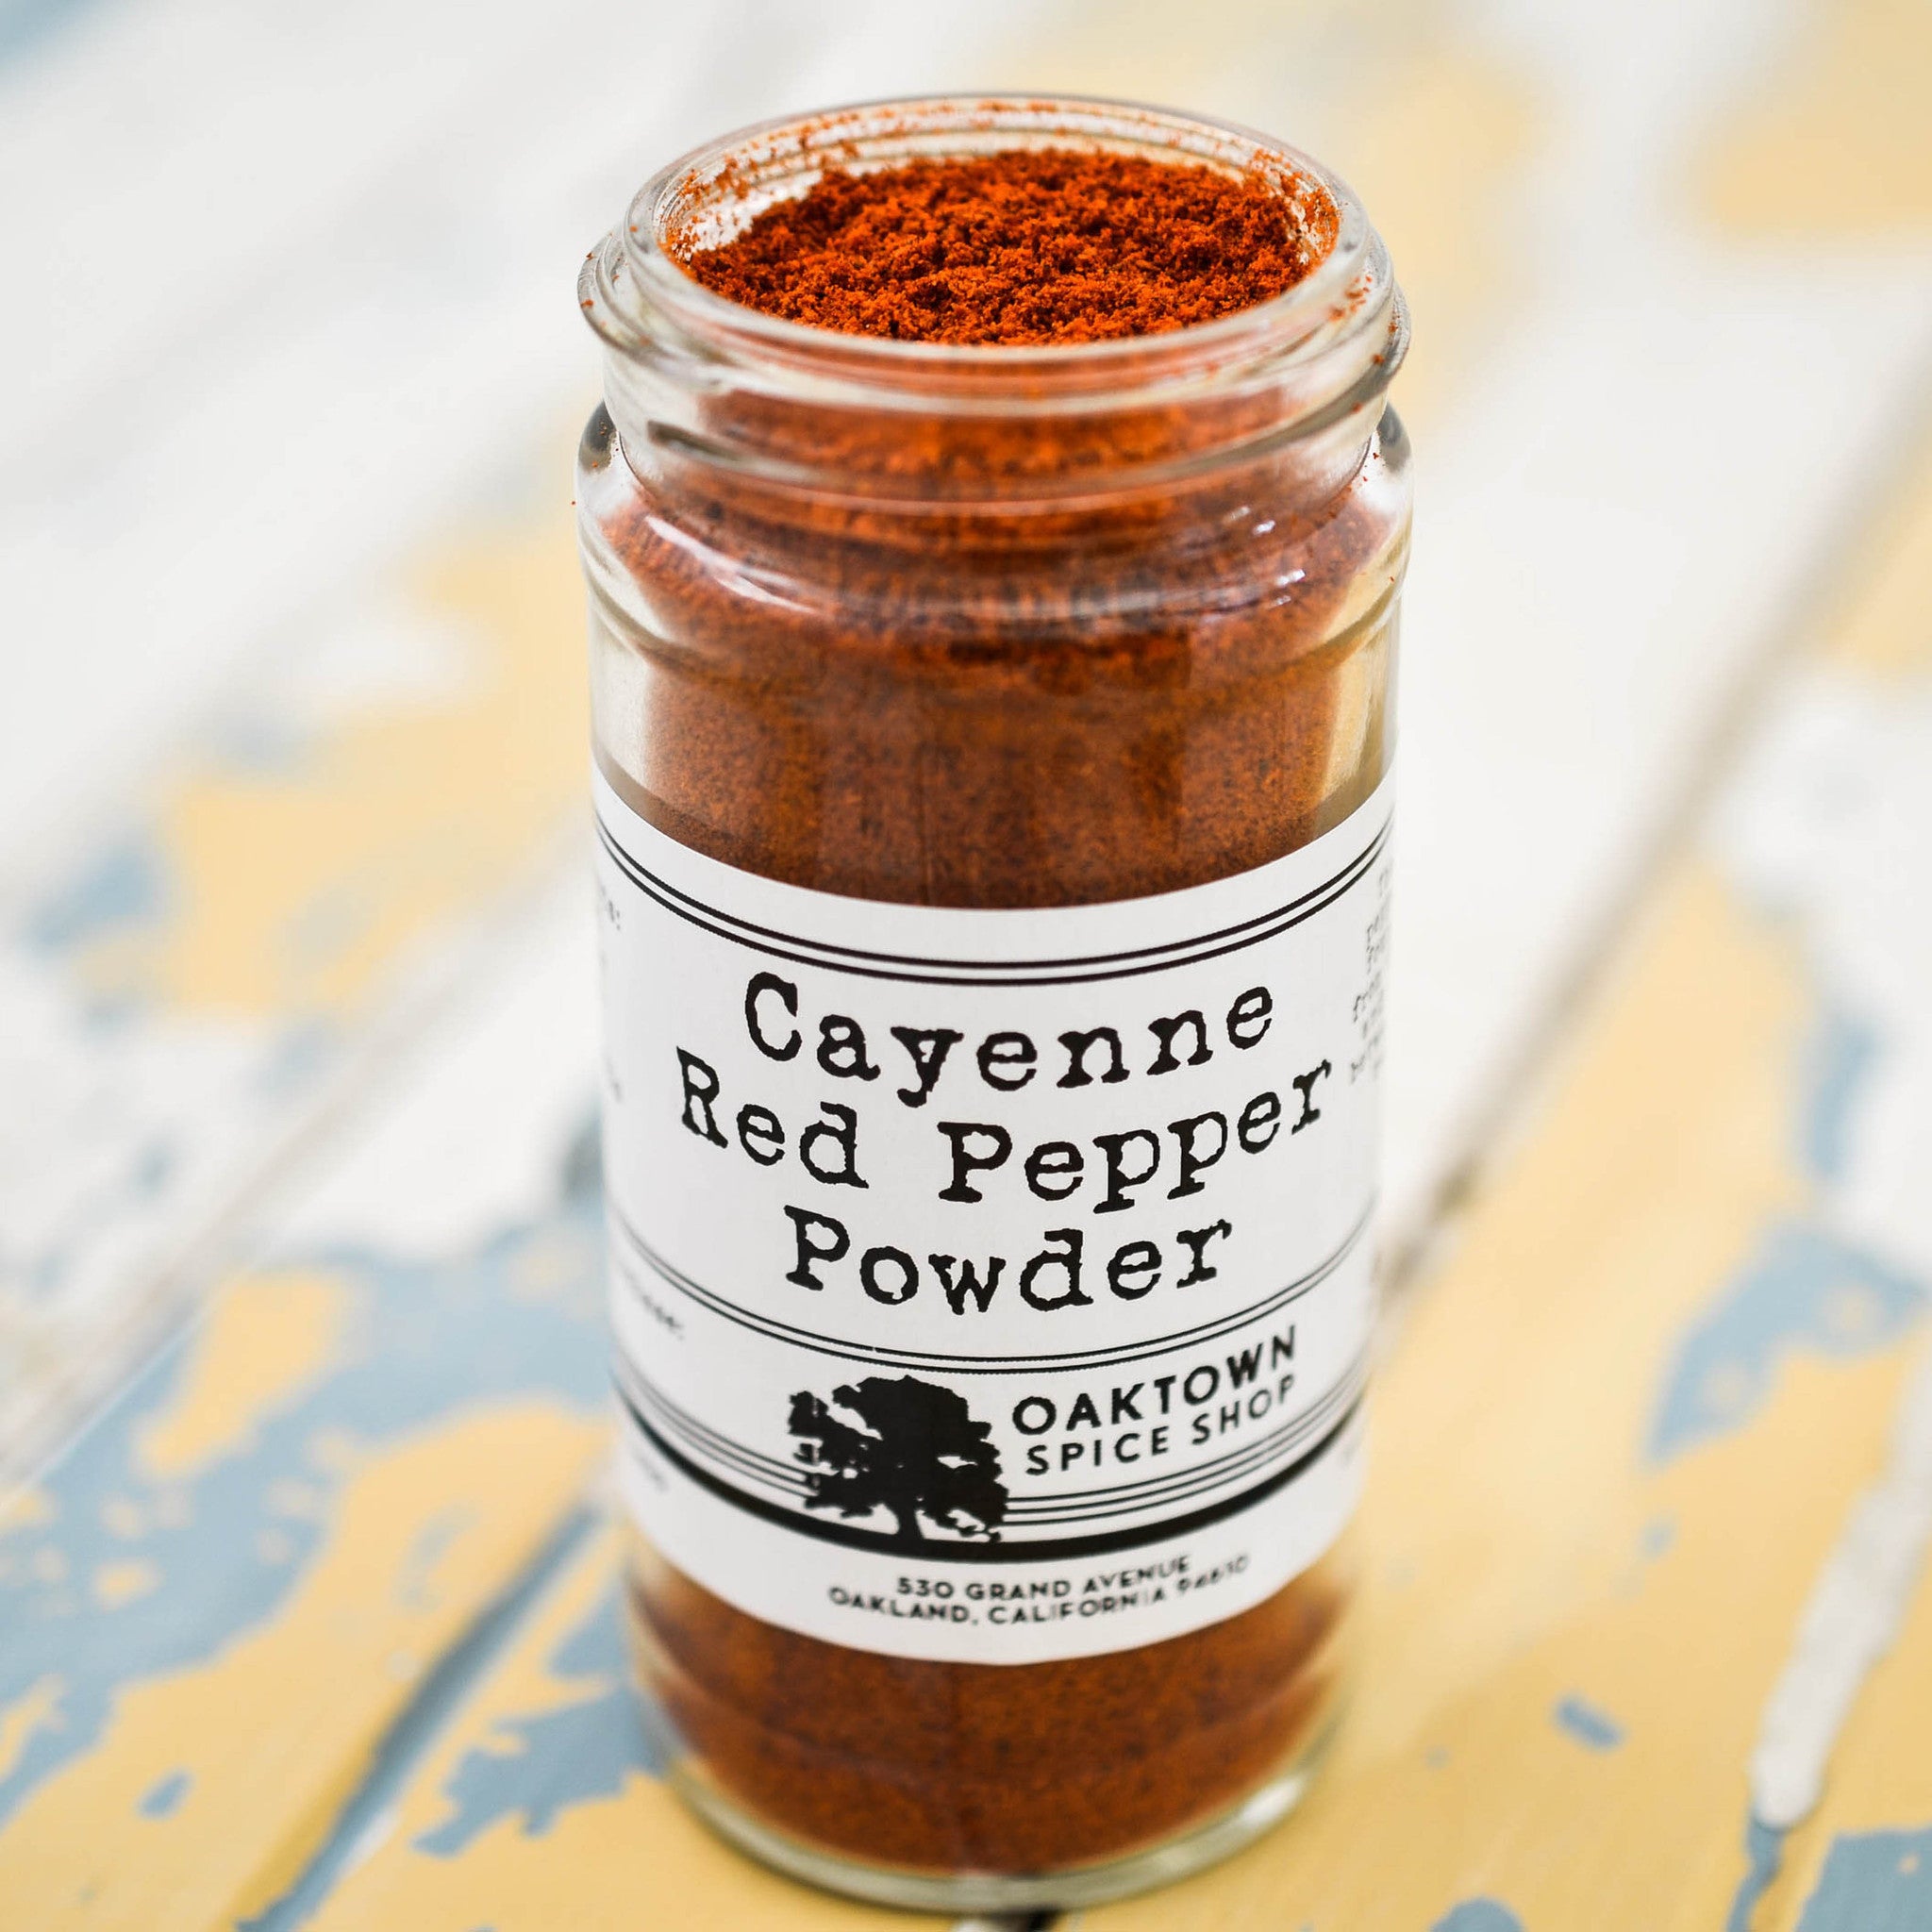 Cayenne Red Pepper Powder Fresh Ground Spice Online at Oaktown Spice Shop